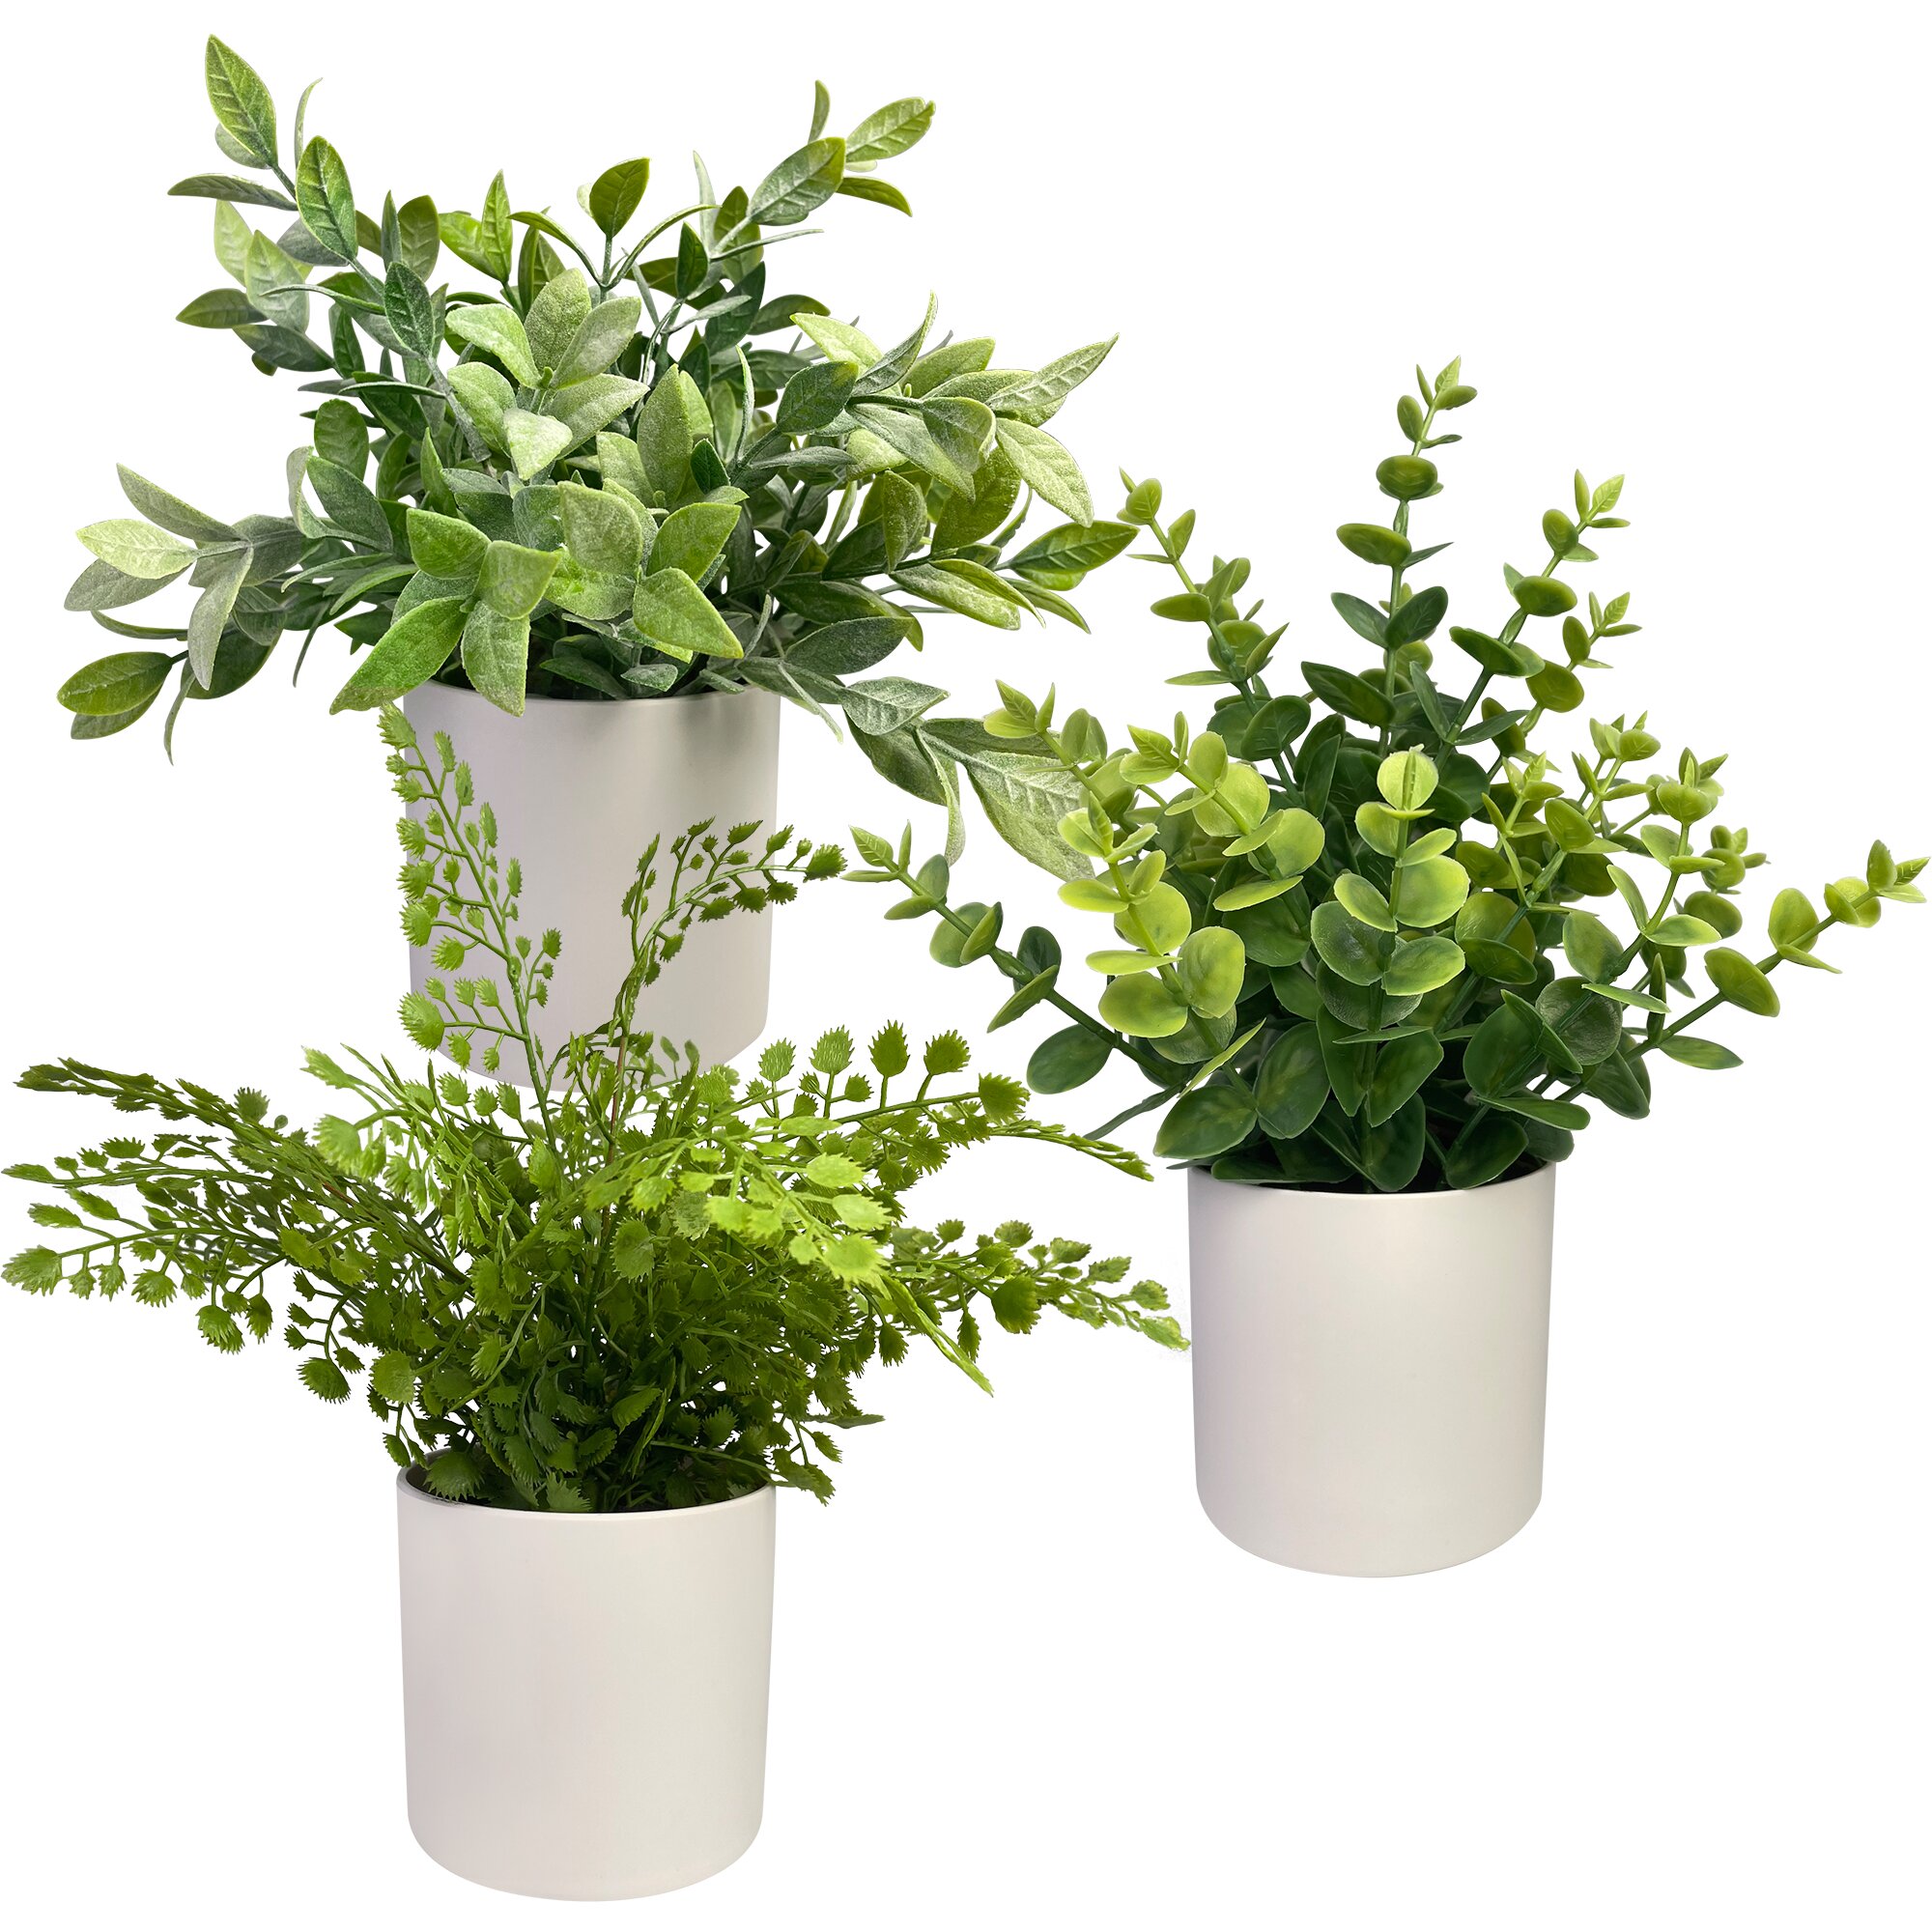 https://assets.wfcdn.com/im/40465977/compr-r85/1631/163104907/faux-plants-89-faux-eucalyptus-plant-in-ceramic-pot.jpg